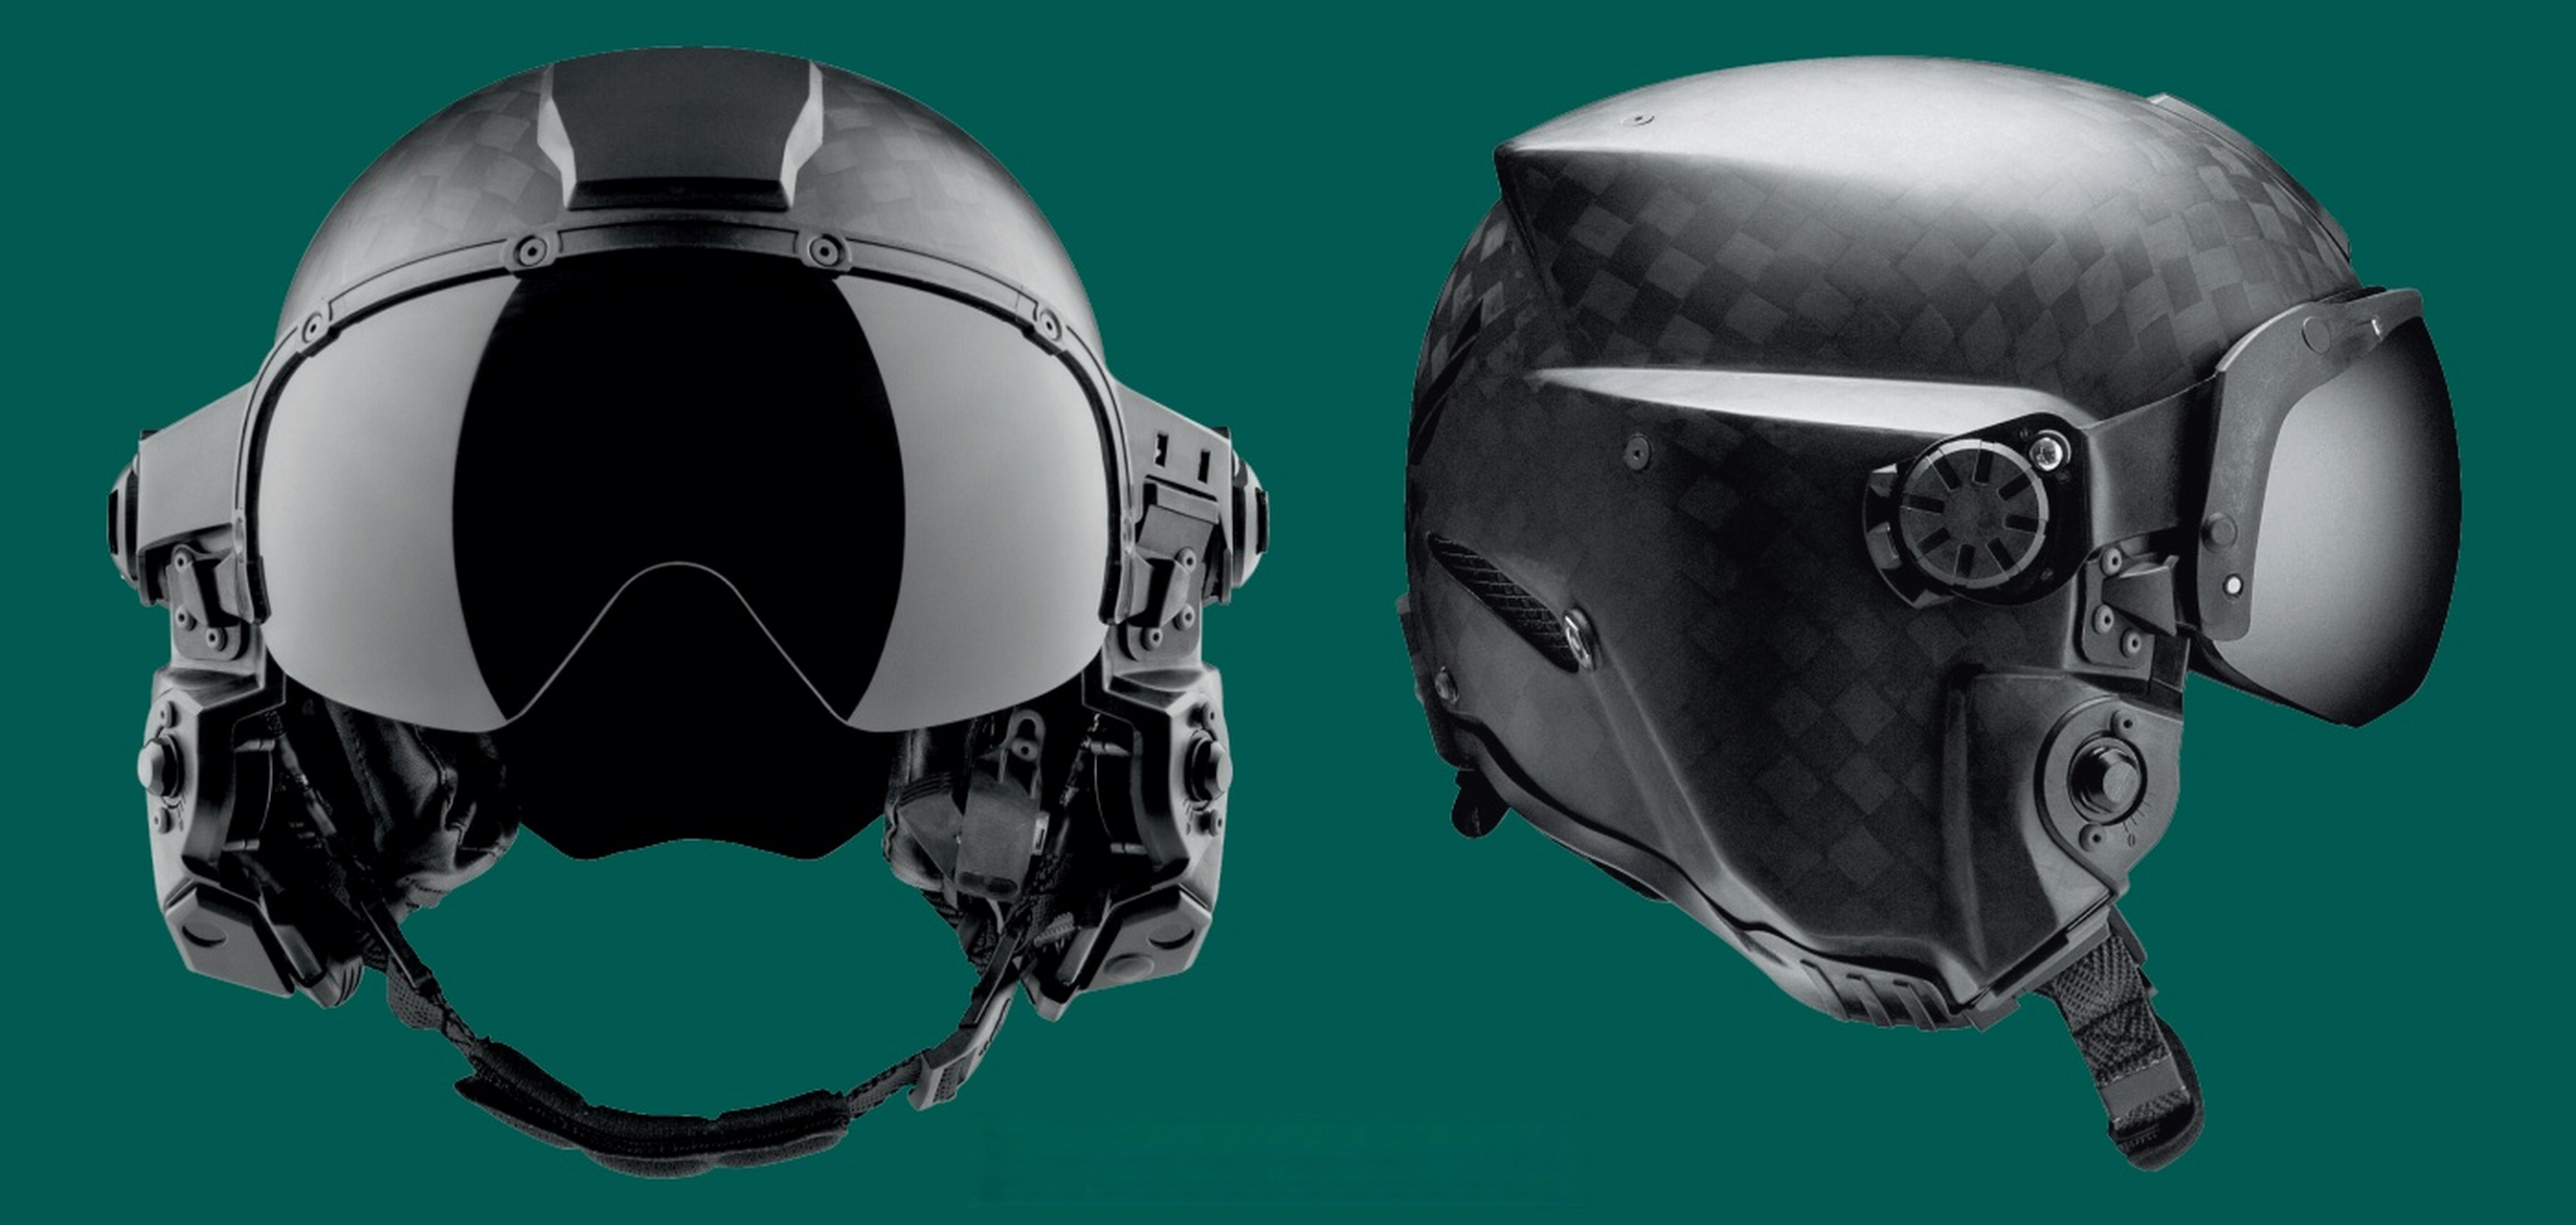 【美军飞行员的新头盔】  现代战斗机飞行员的头盔非常复杂,除了对